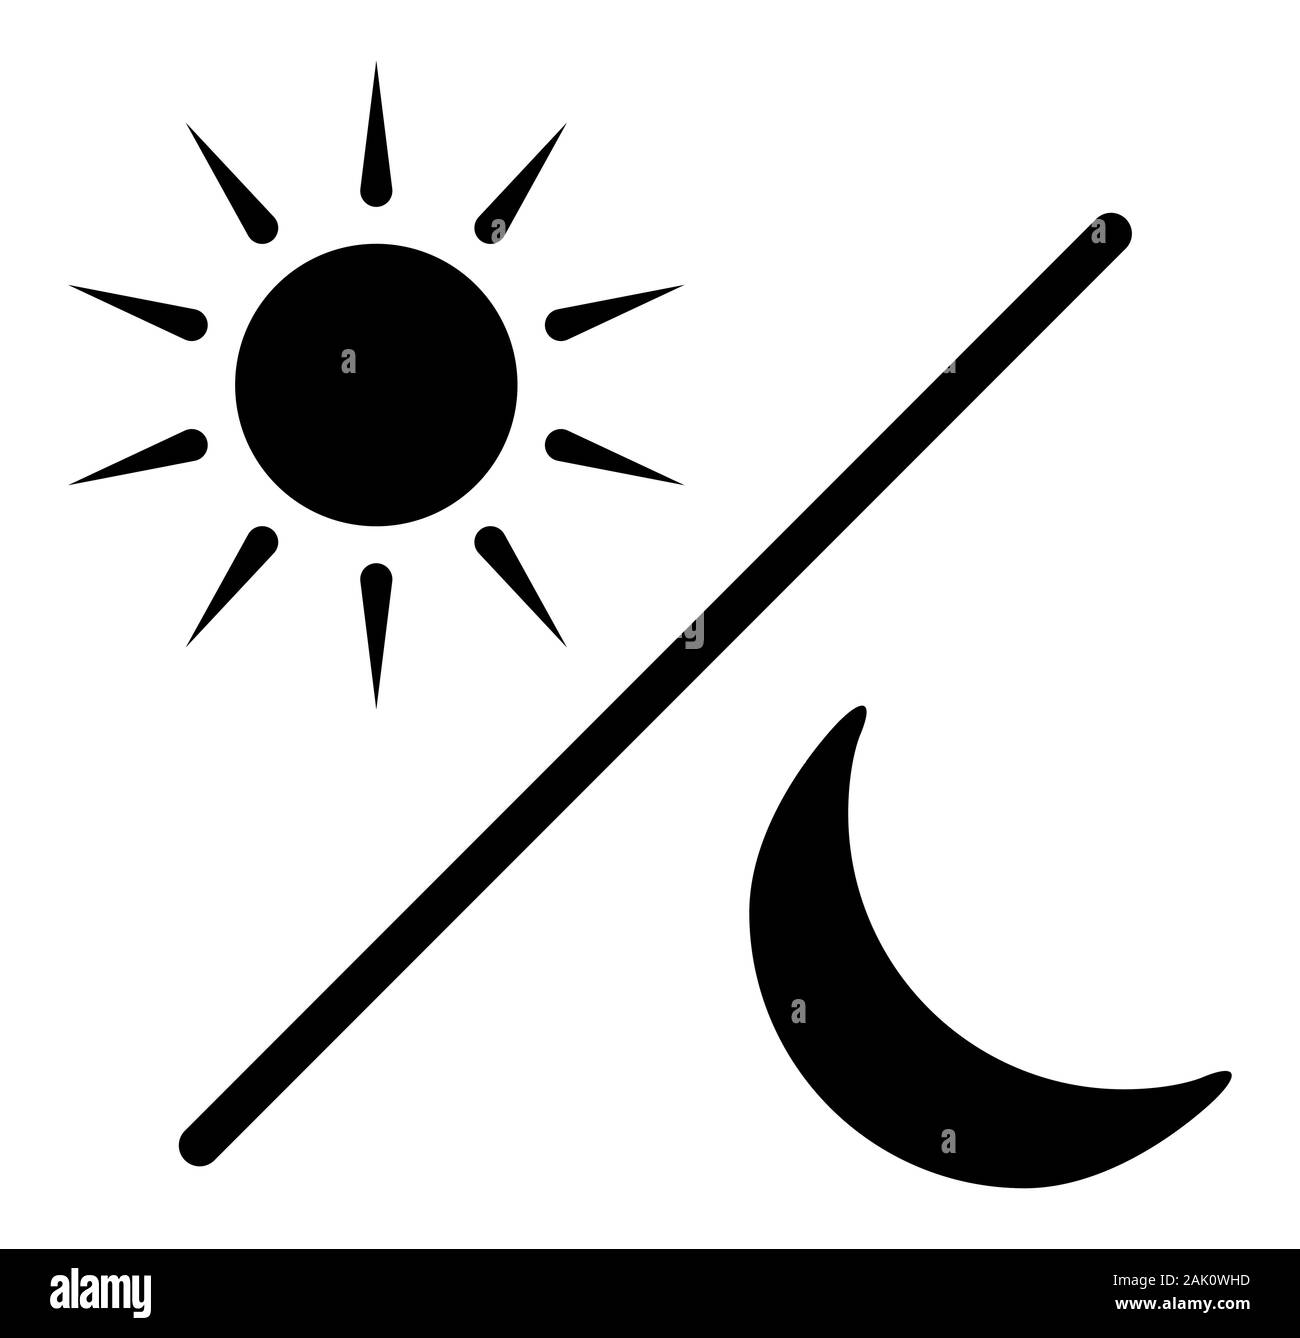 Sonne und Mond Glyphe silhouette Symbol, schwarzer Tag und Nacht Symbol, Flachbild Vektor einfache Element Abbildung auf weißem Hintergrund Stock Vektor